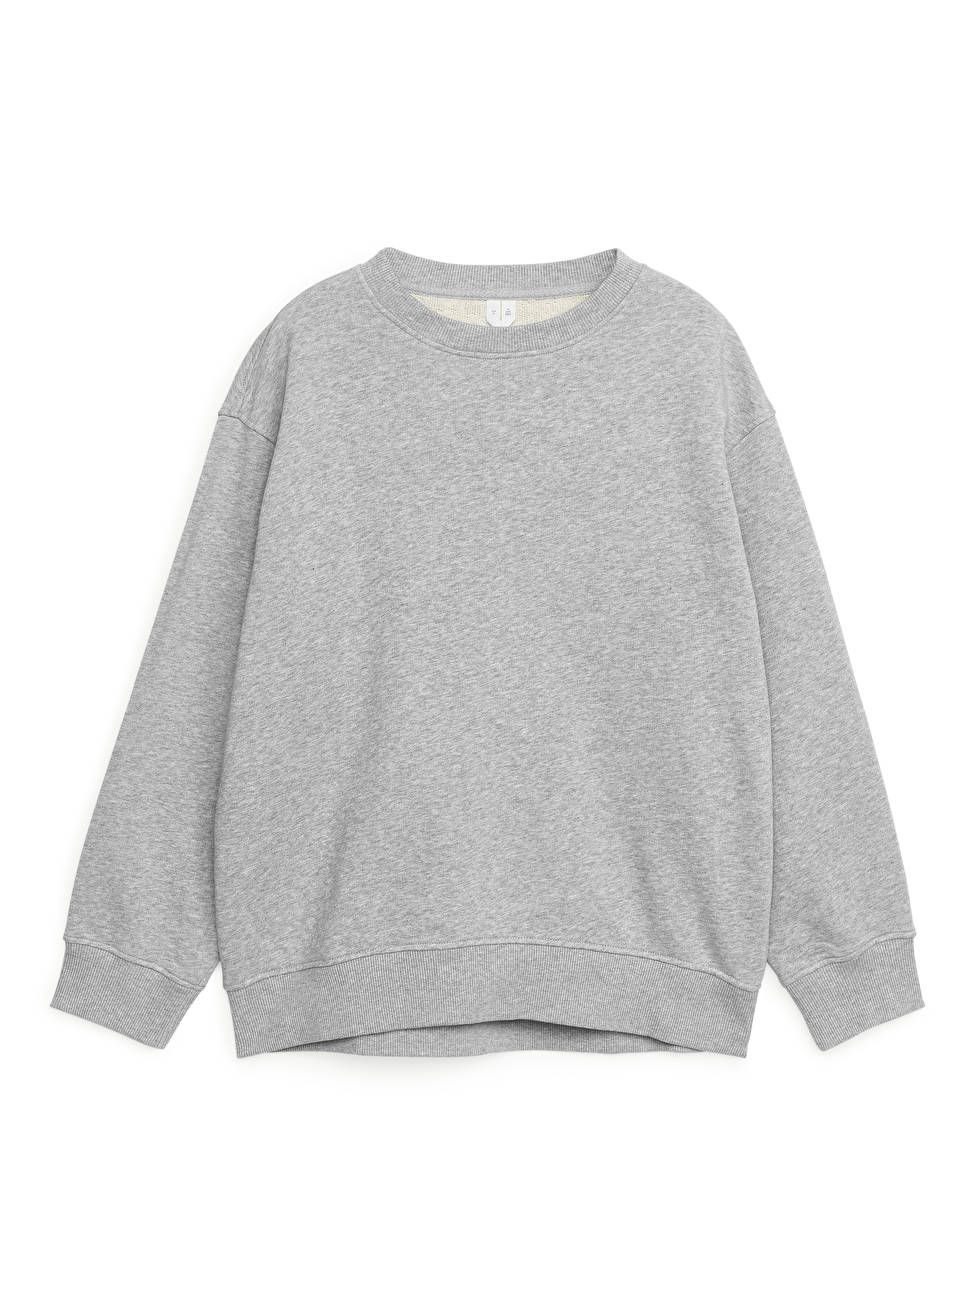 Soft French Terry Sweatshirt - Grey Melange - Tops - ARKET DE | ARKET (EU)